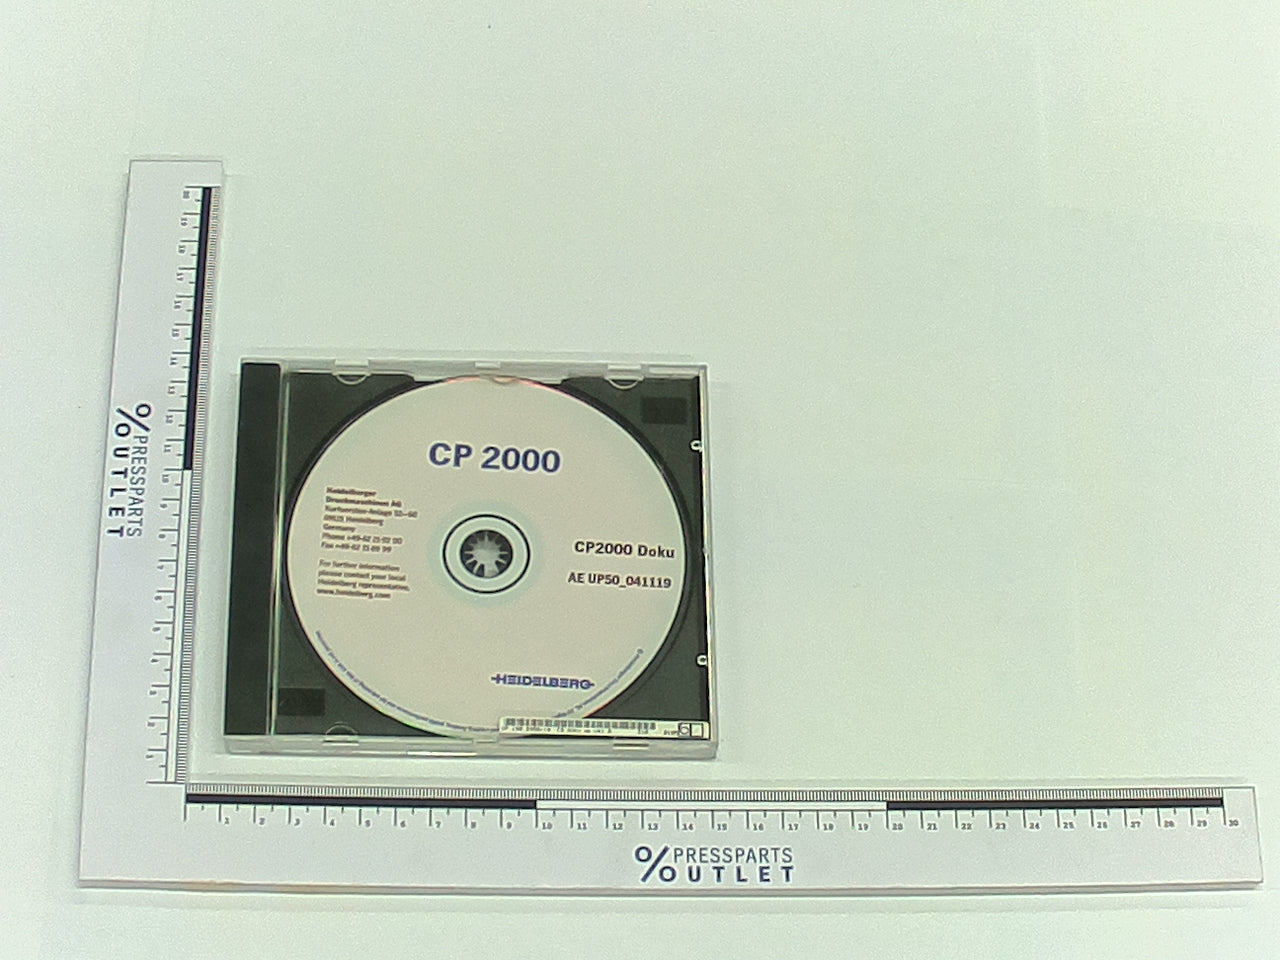 CD-ROM CD-ROM Prog.;99 - CP.150.2950/18 - CD-ROM CD-ROM Prog.;99